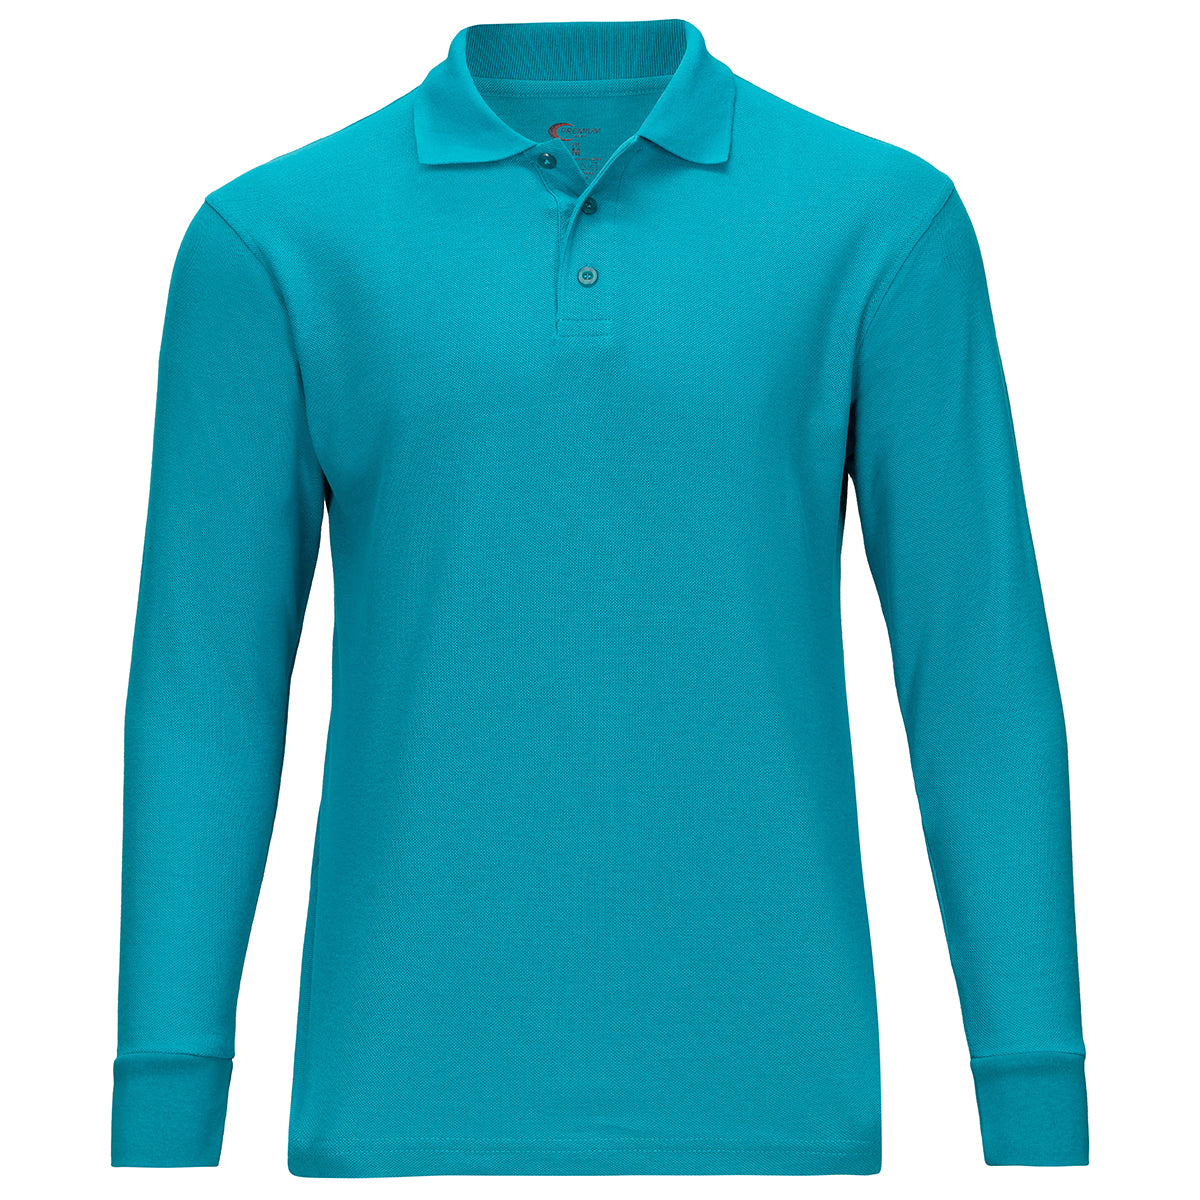 Boys/ Unisex Long Sleeve Pique Polo Shirt